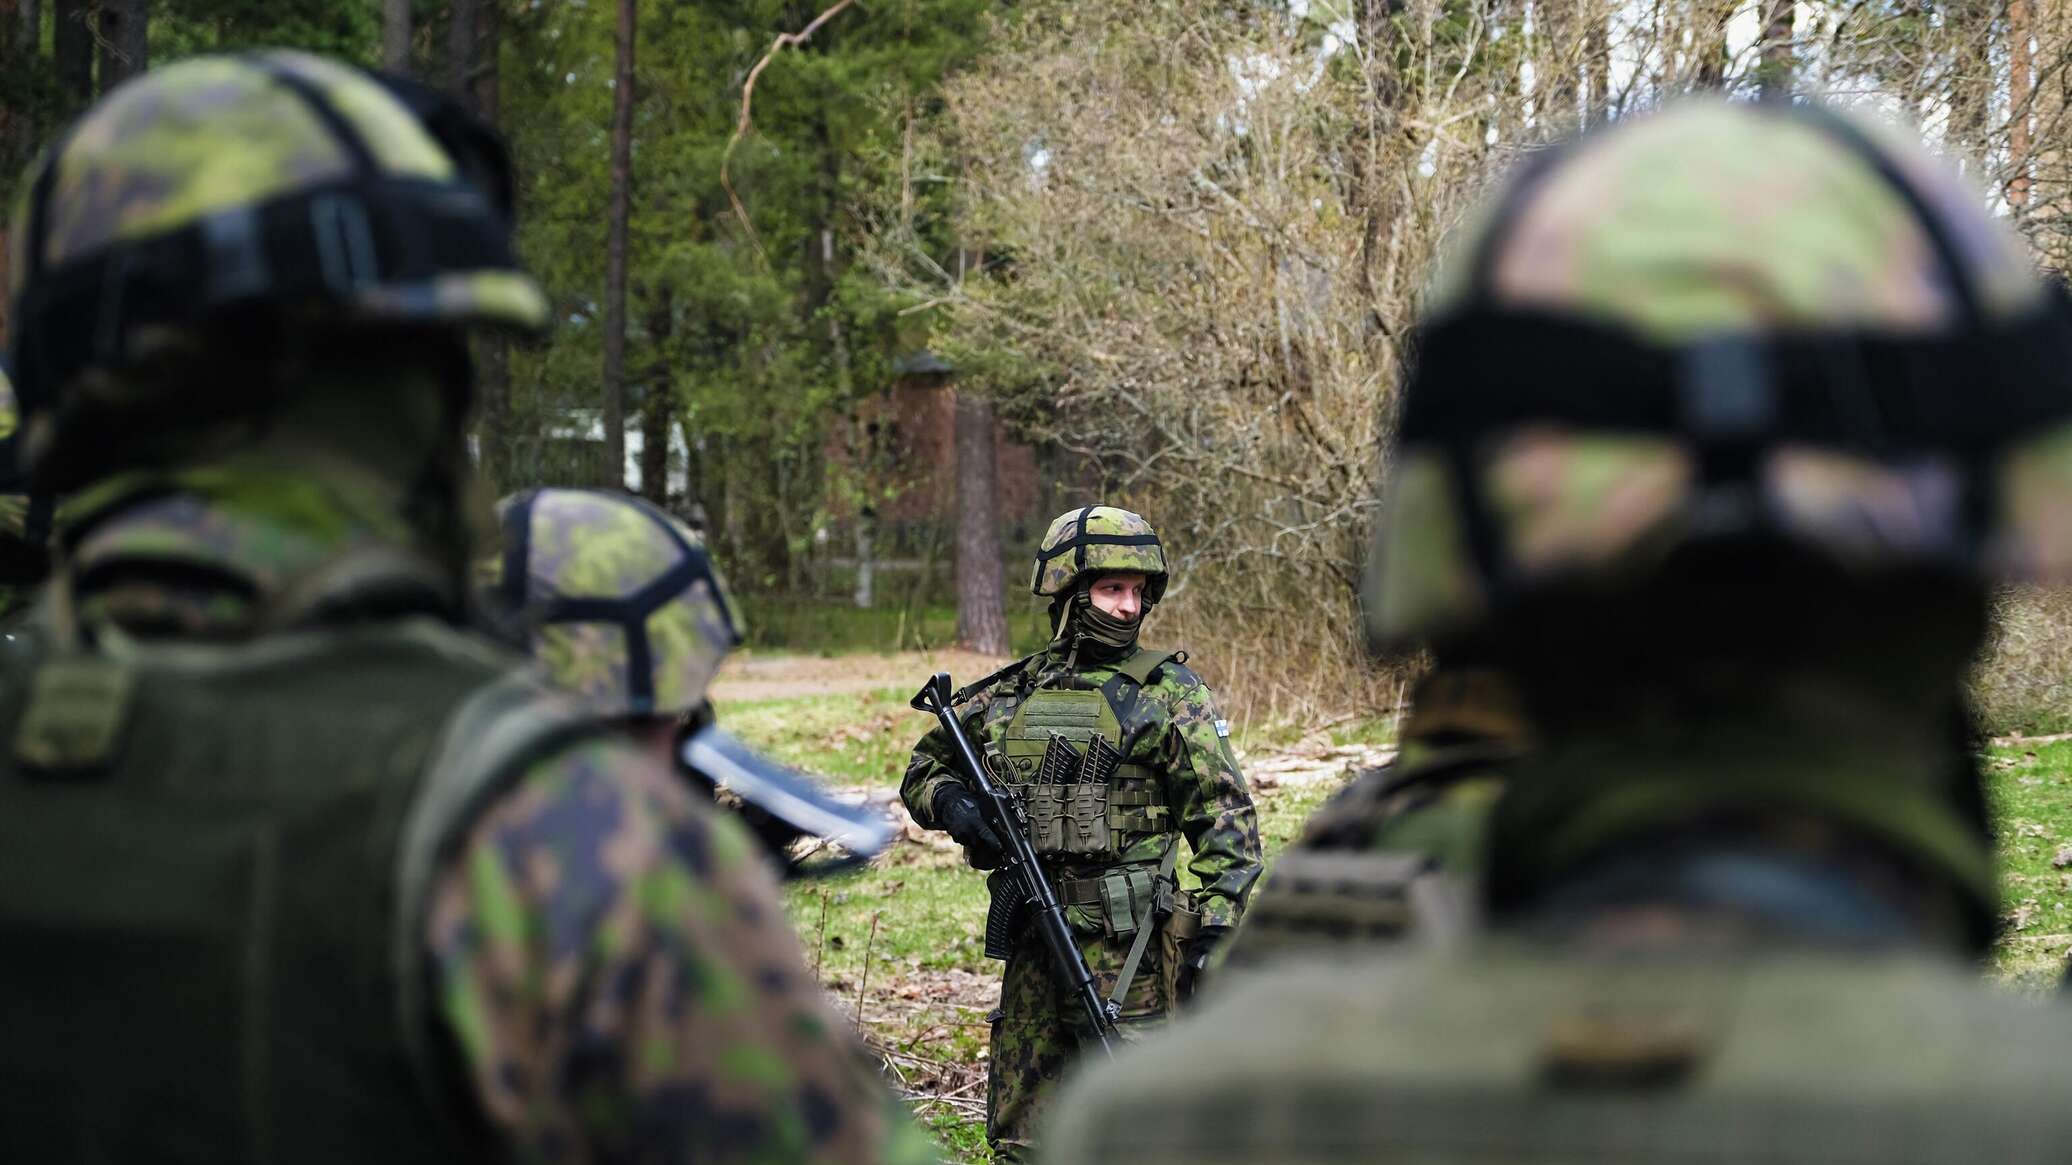 الرئيس الفنلندي يدعو الناتو إلى الاستعداد "للصراع" مع روسيا